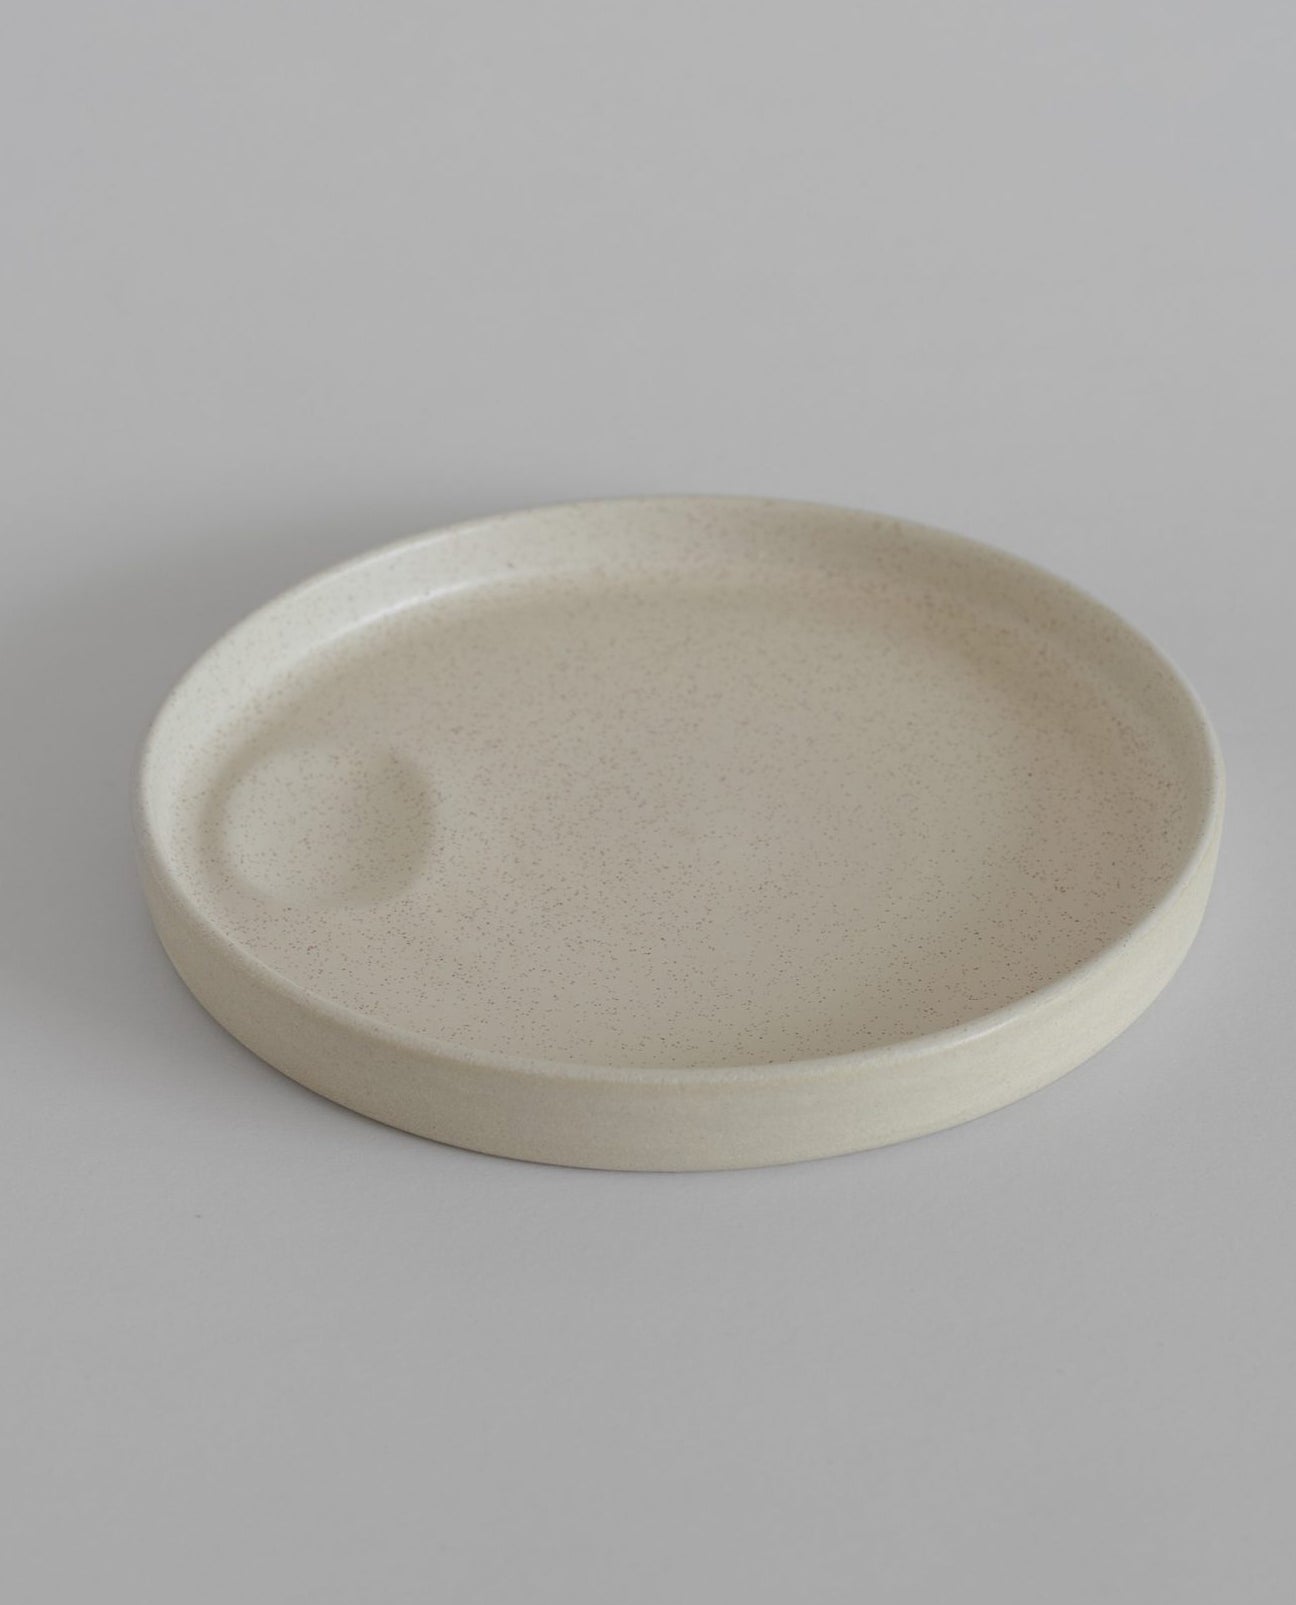 Olivinha-Ocactuu Side Plate in Cream